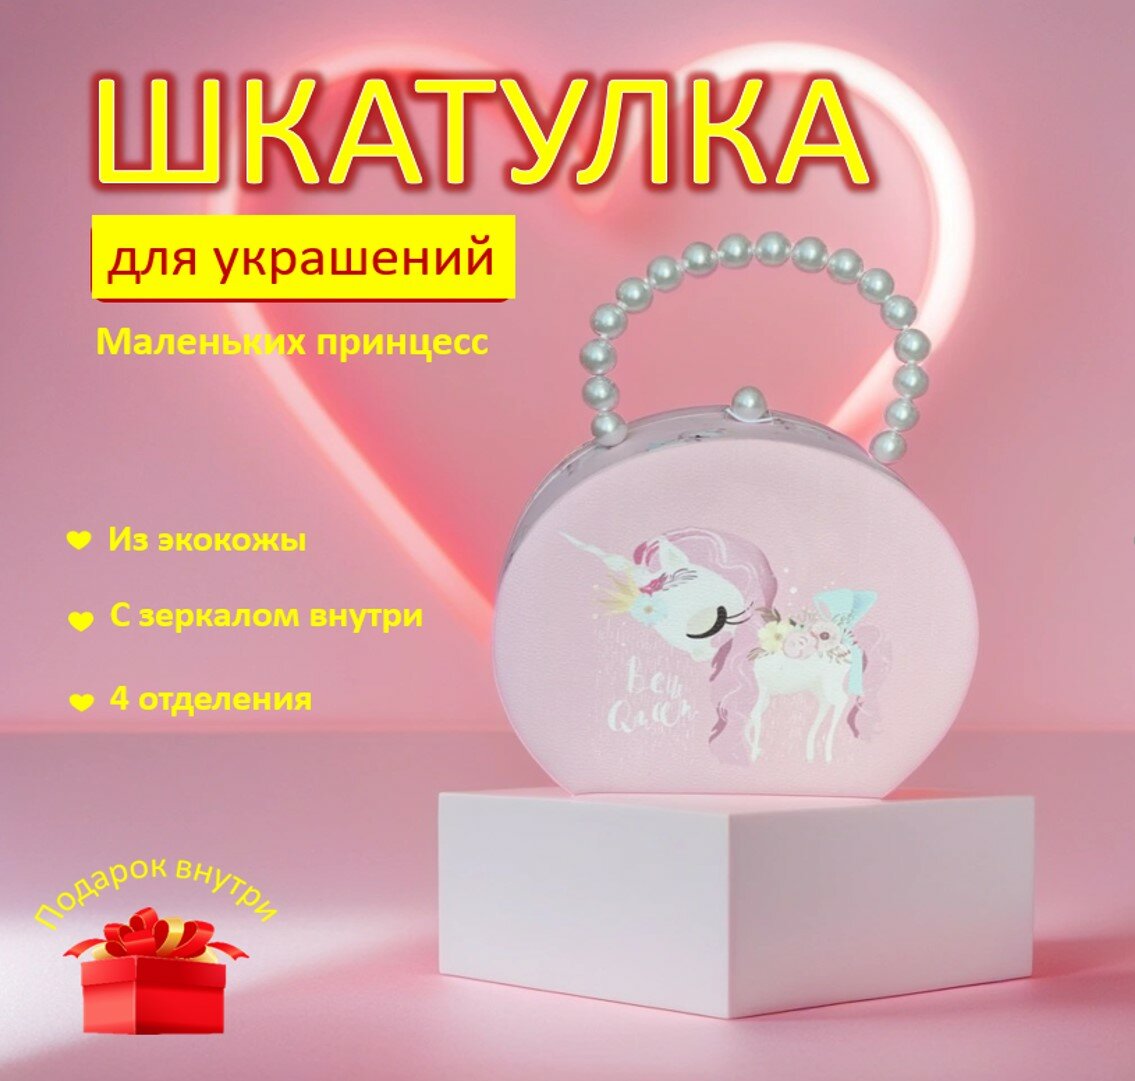 Сумочка - шкатулка для украшений с единорогом детская розовая с зеркалом внутри